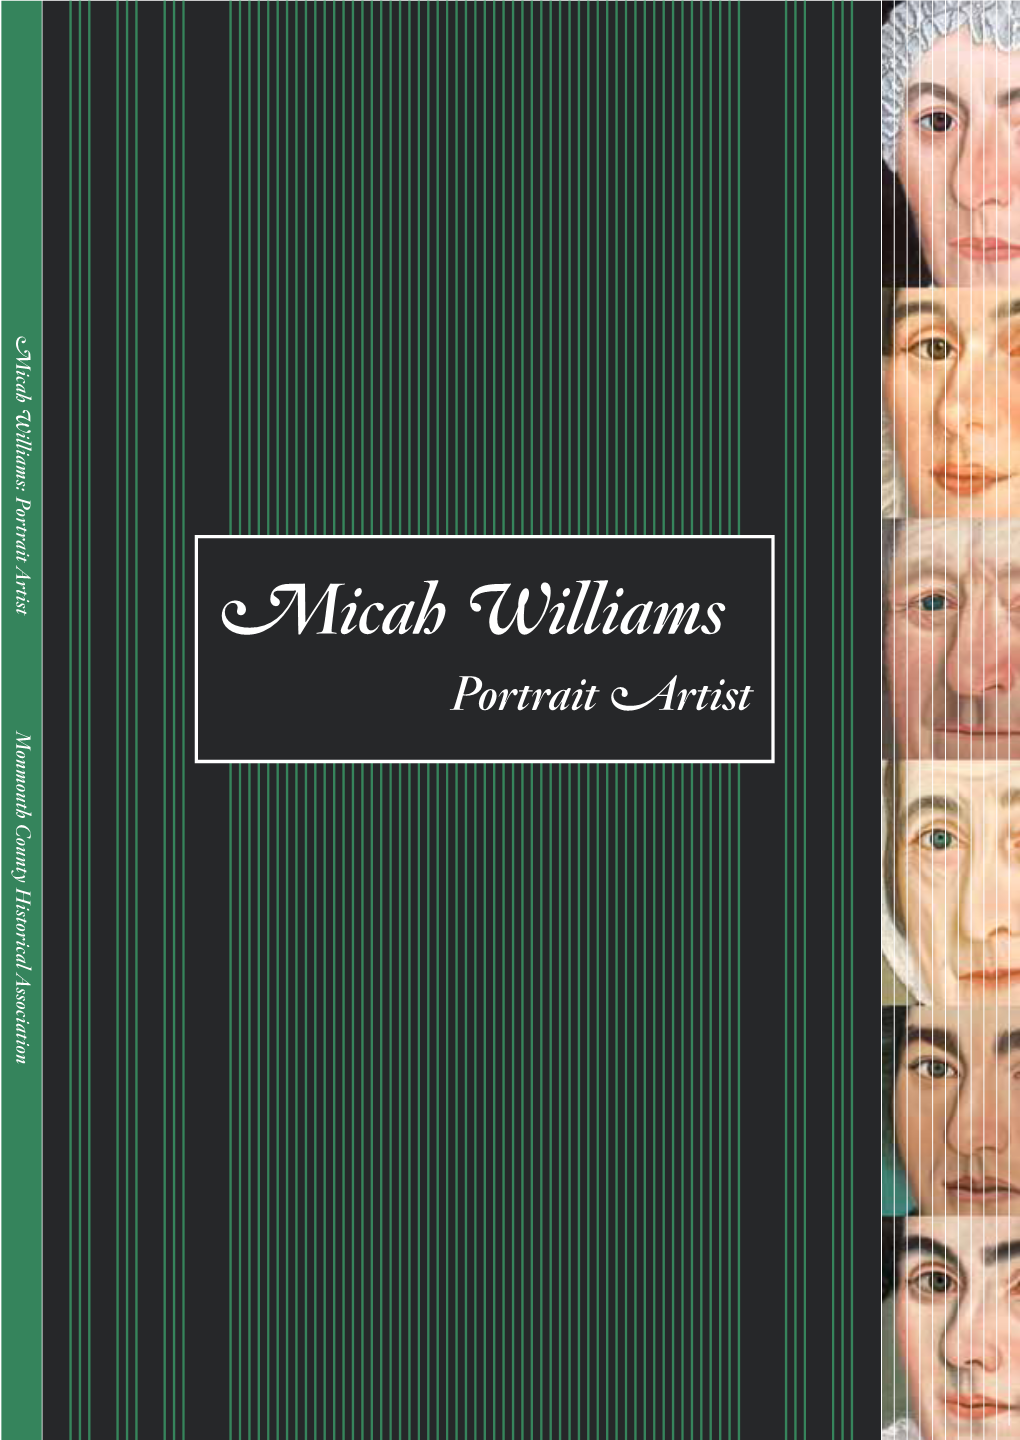 Micah Williams Portrait Artist Micah Williams Portrait Artist Micah Williams Portrait Artist M a Y 19, 2013 — S E P T E M B E R 2 9 , 2 0 1 3